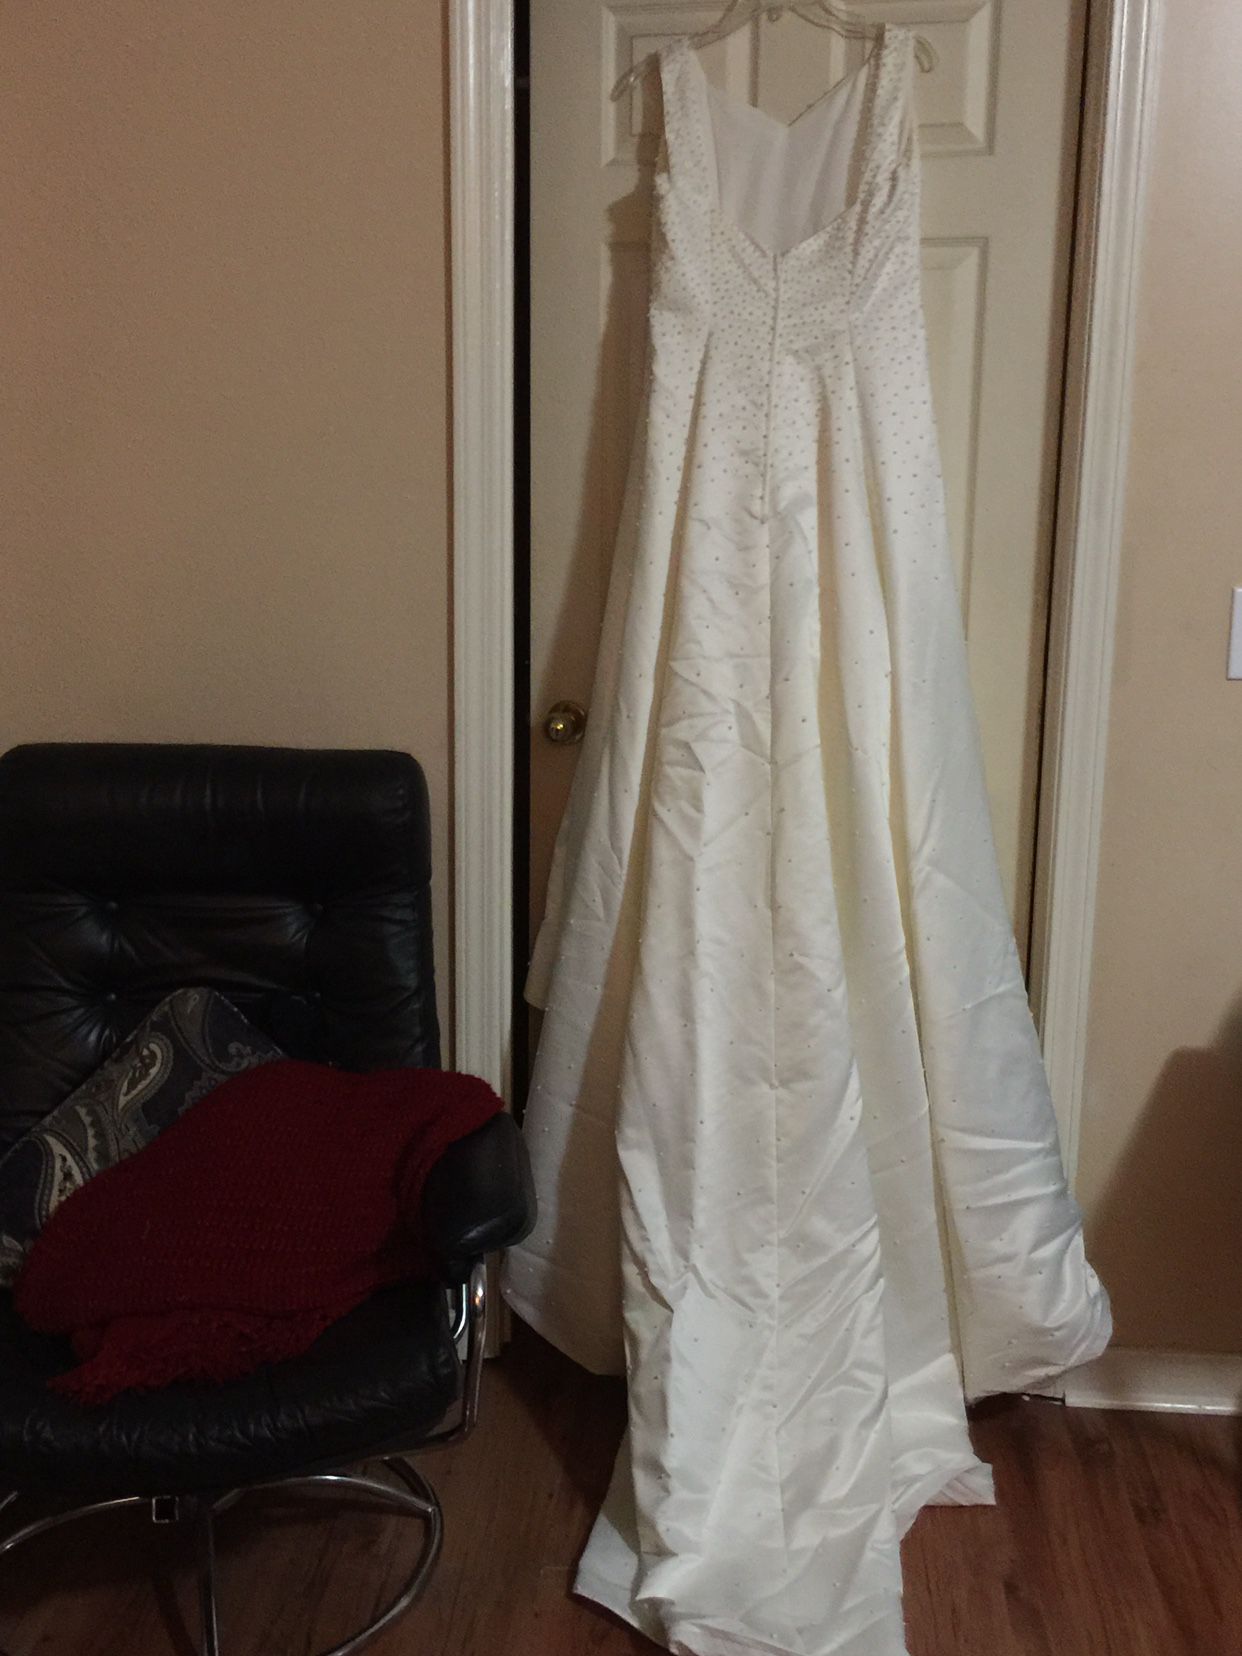 Wedding Dress, Size 14